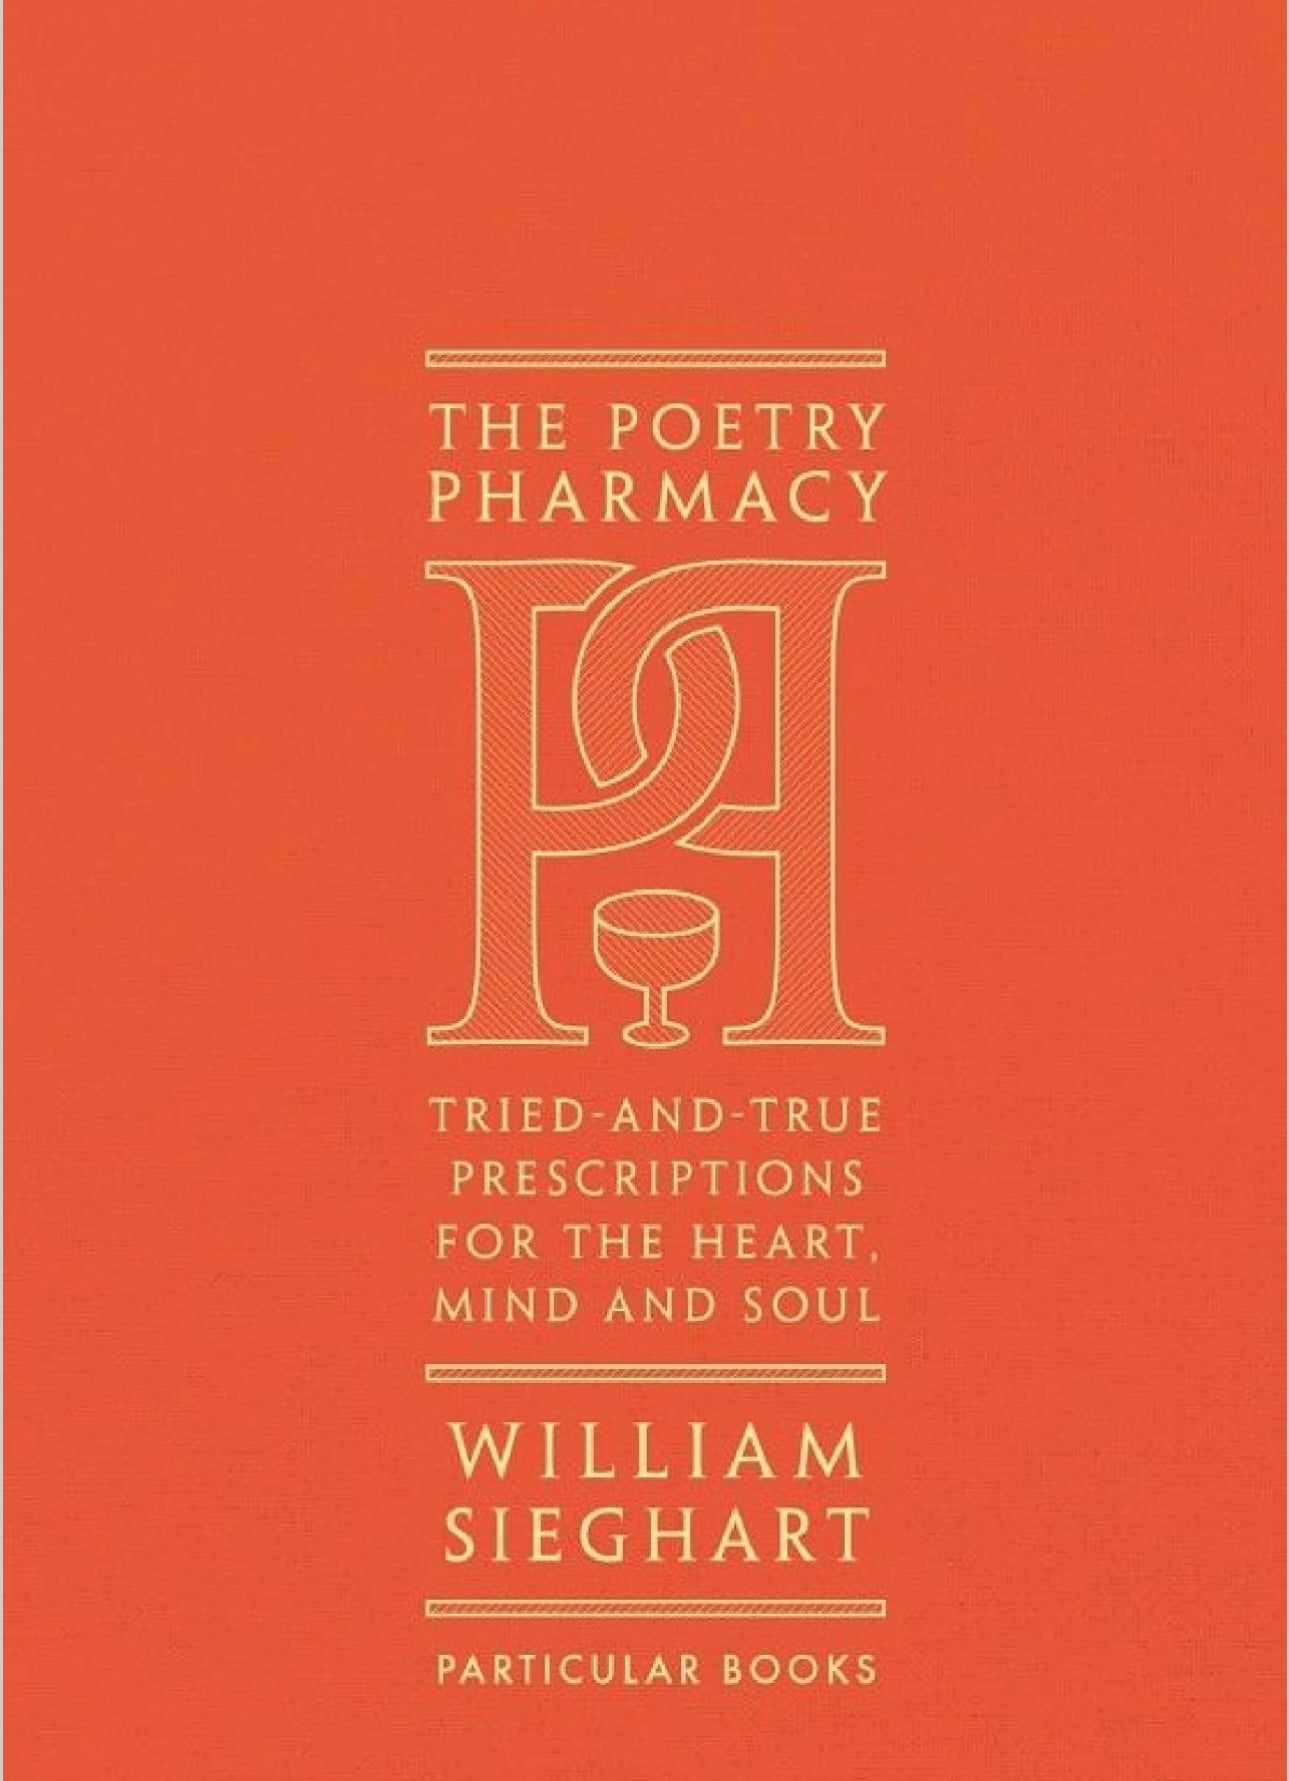 Poetry pharmacy